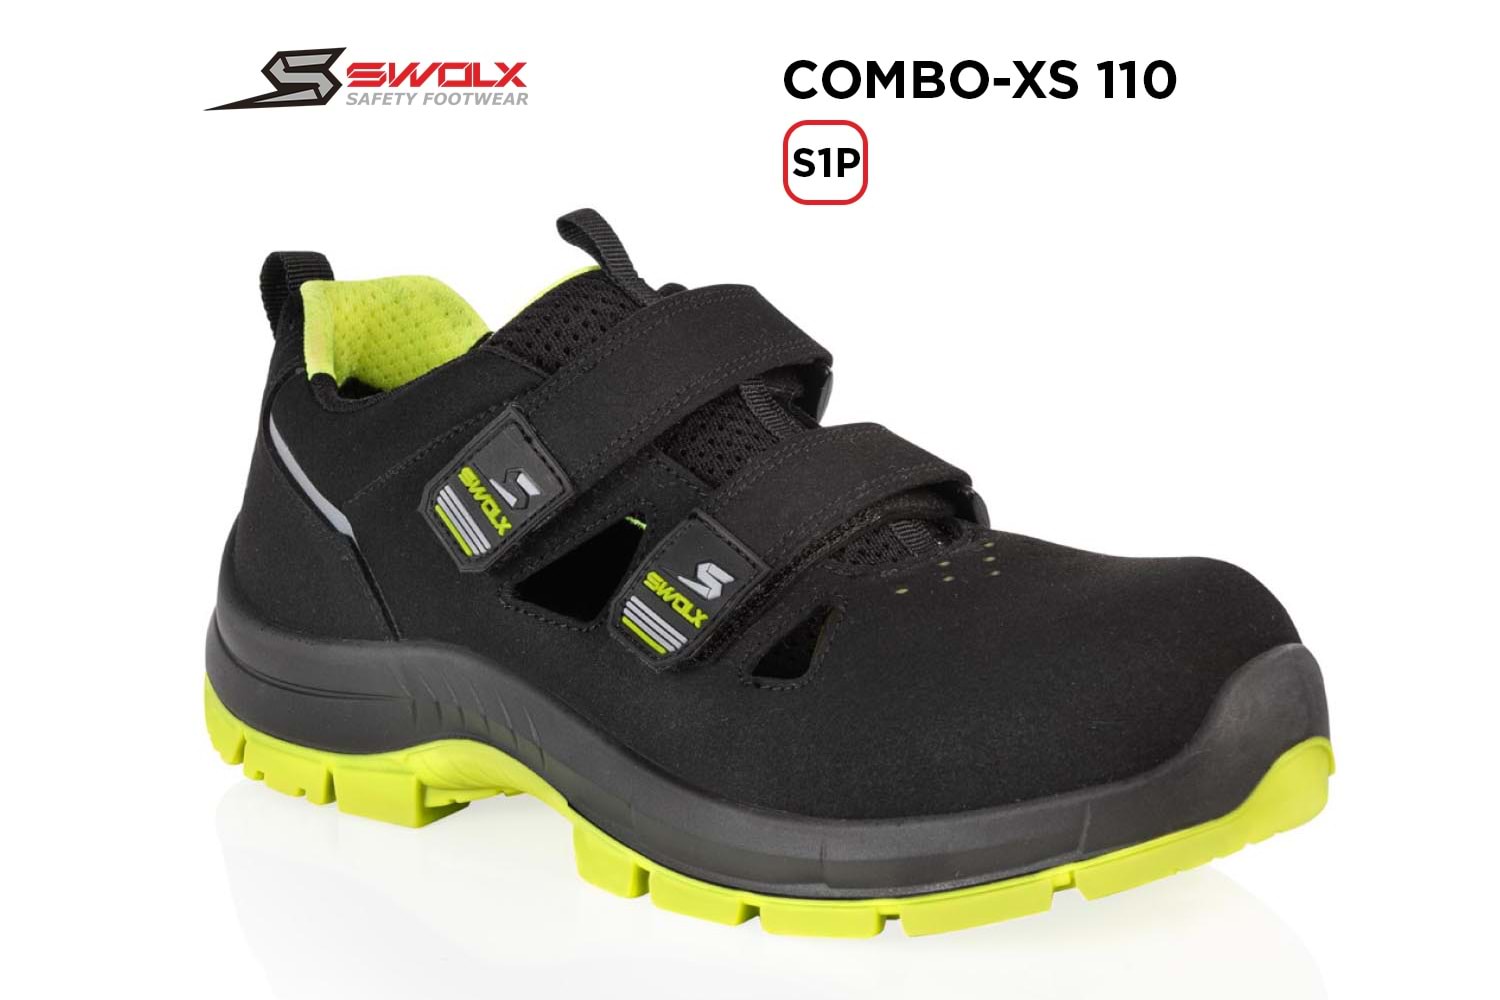 Swolx İş Ayakkabısı - Combo-Xs 110 S1P (Sun-X 110) - 46